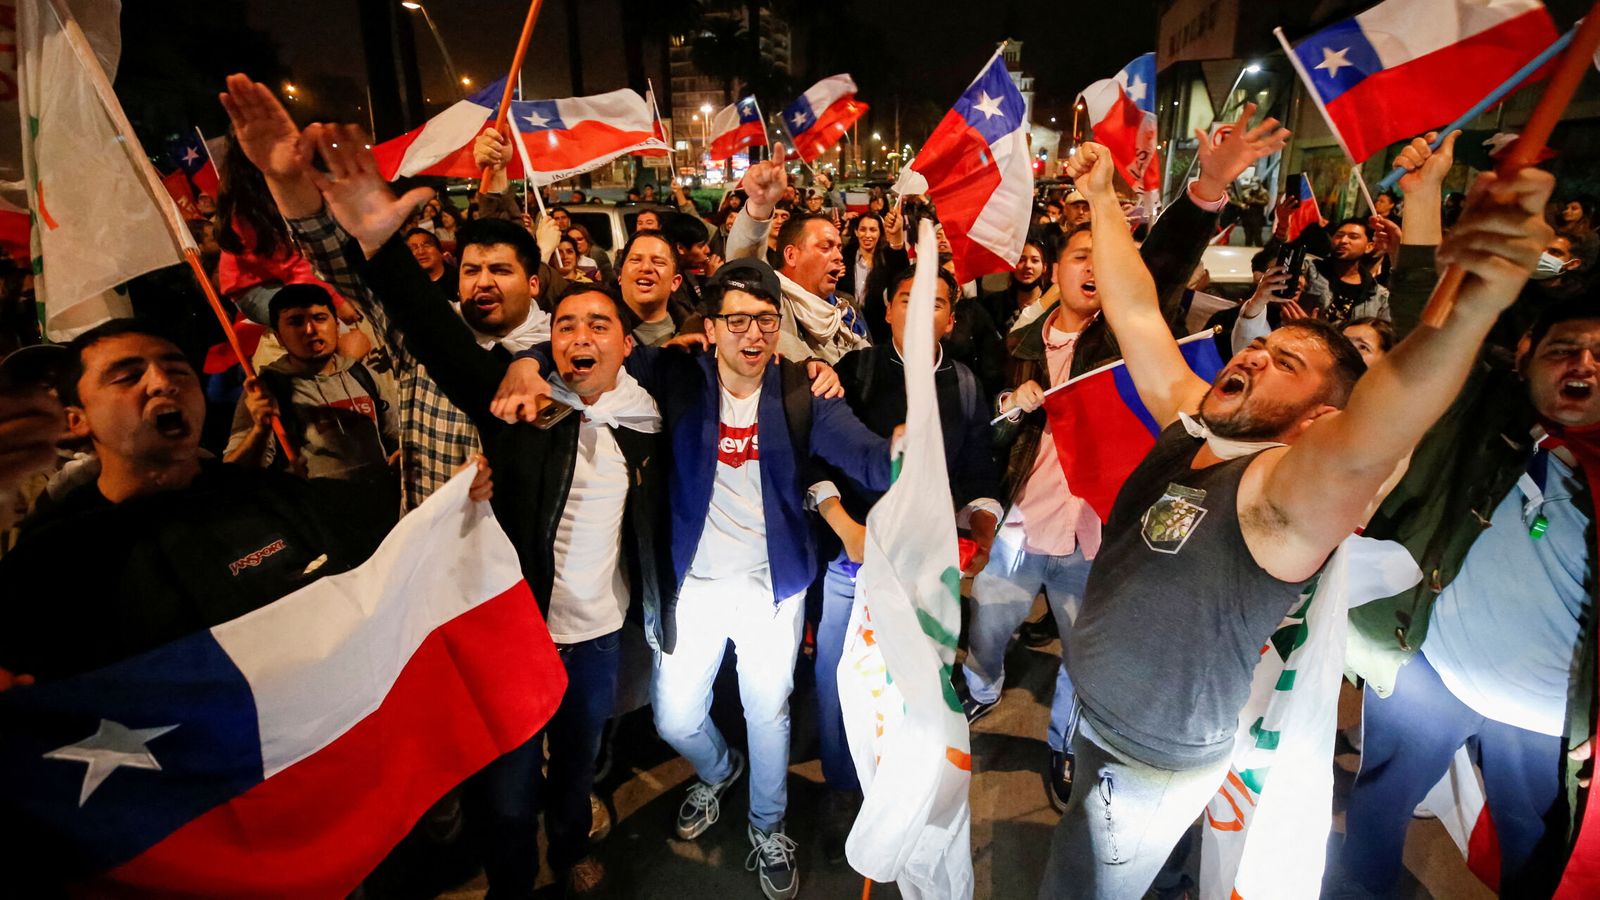 Los partidarios del 'rechazo' celebran el resultado del referéndum sobre una nueva Constitución chilena en Valparaíso, Chile. (Reuters/Rodrigo Garrido)